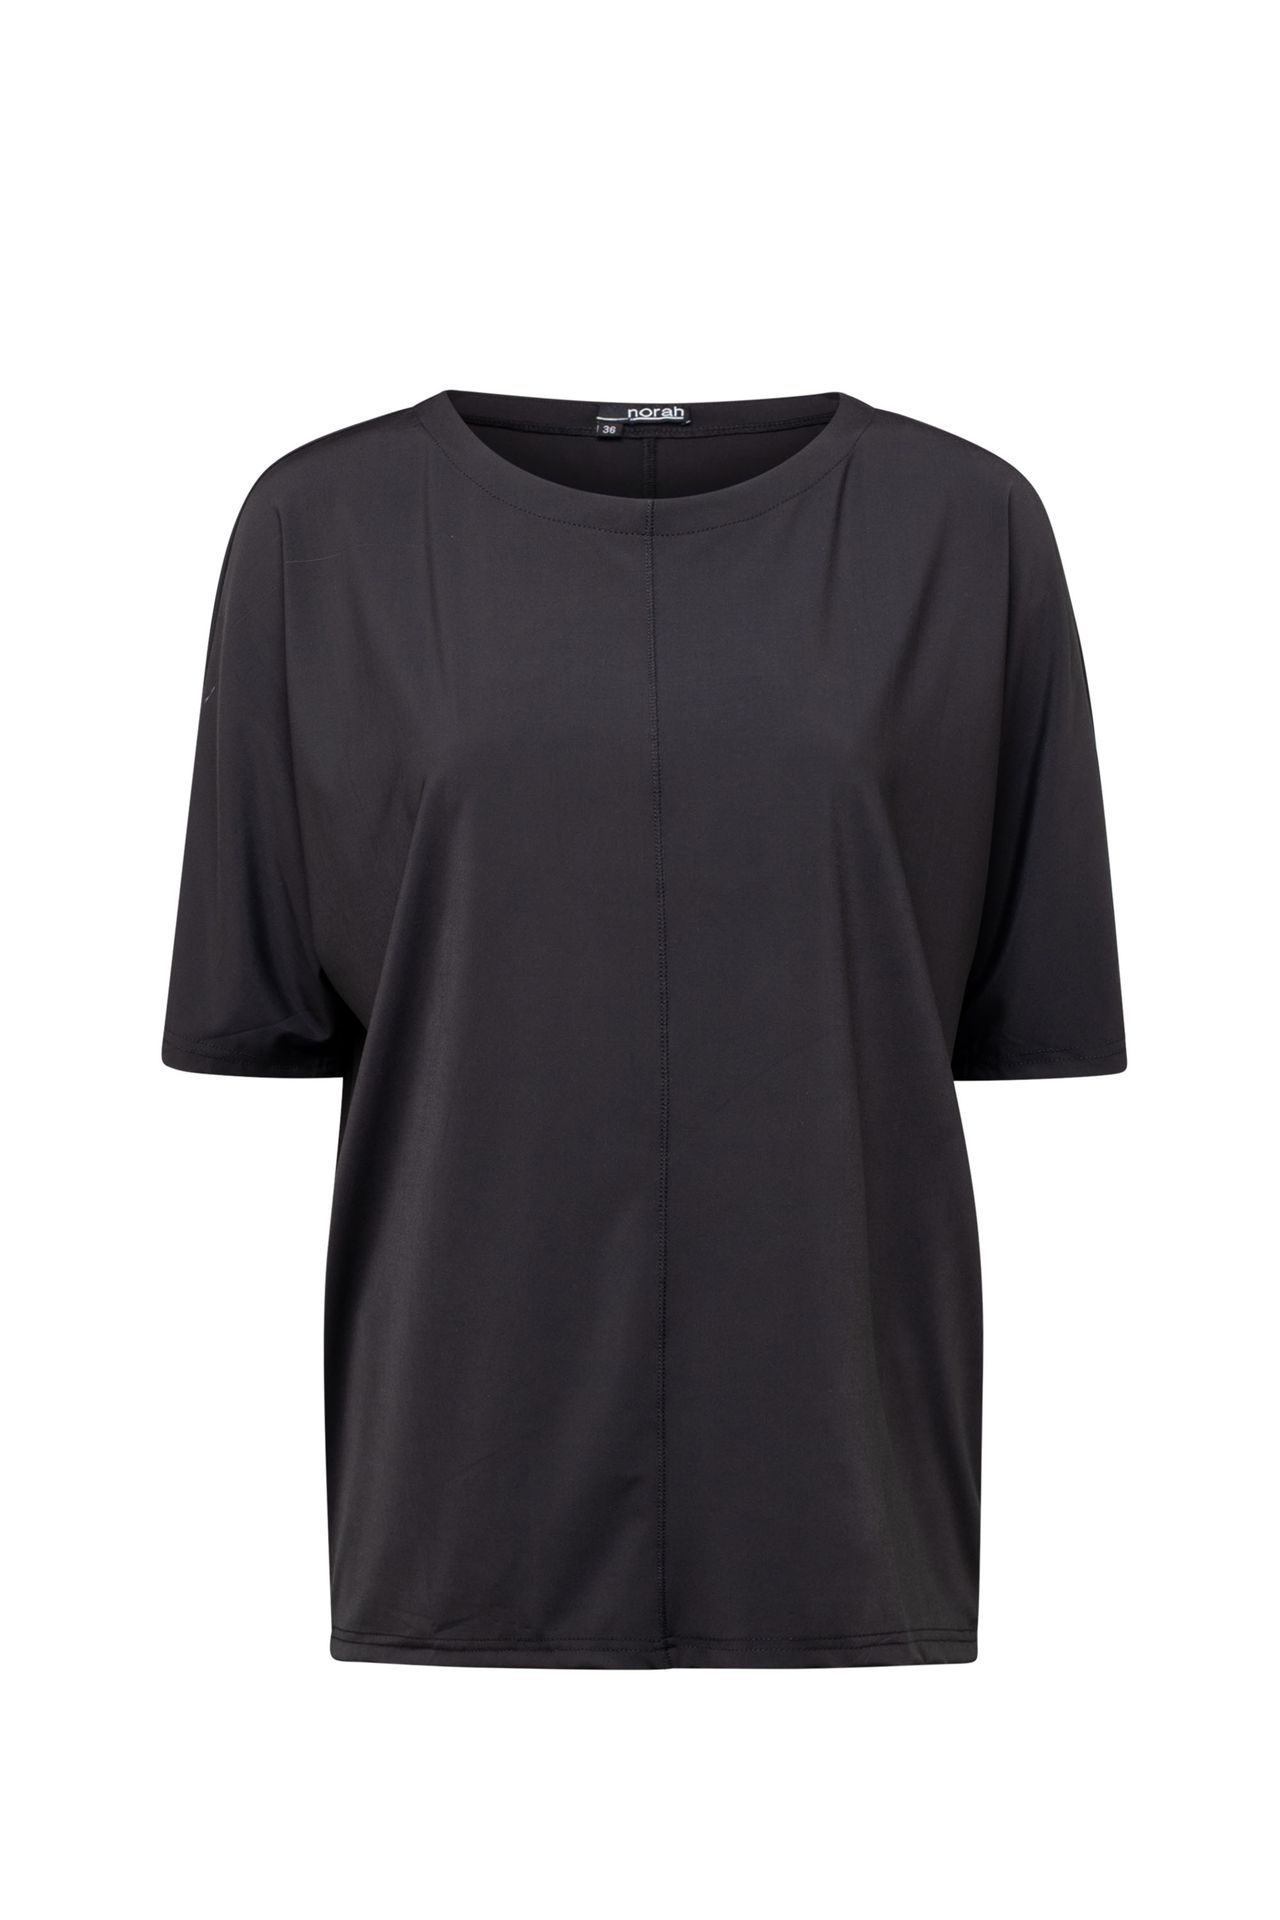  Shirt - Activewear black 211912-001-48